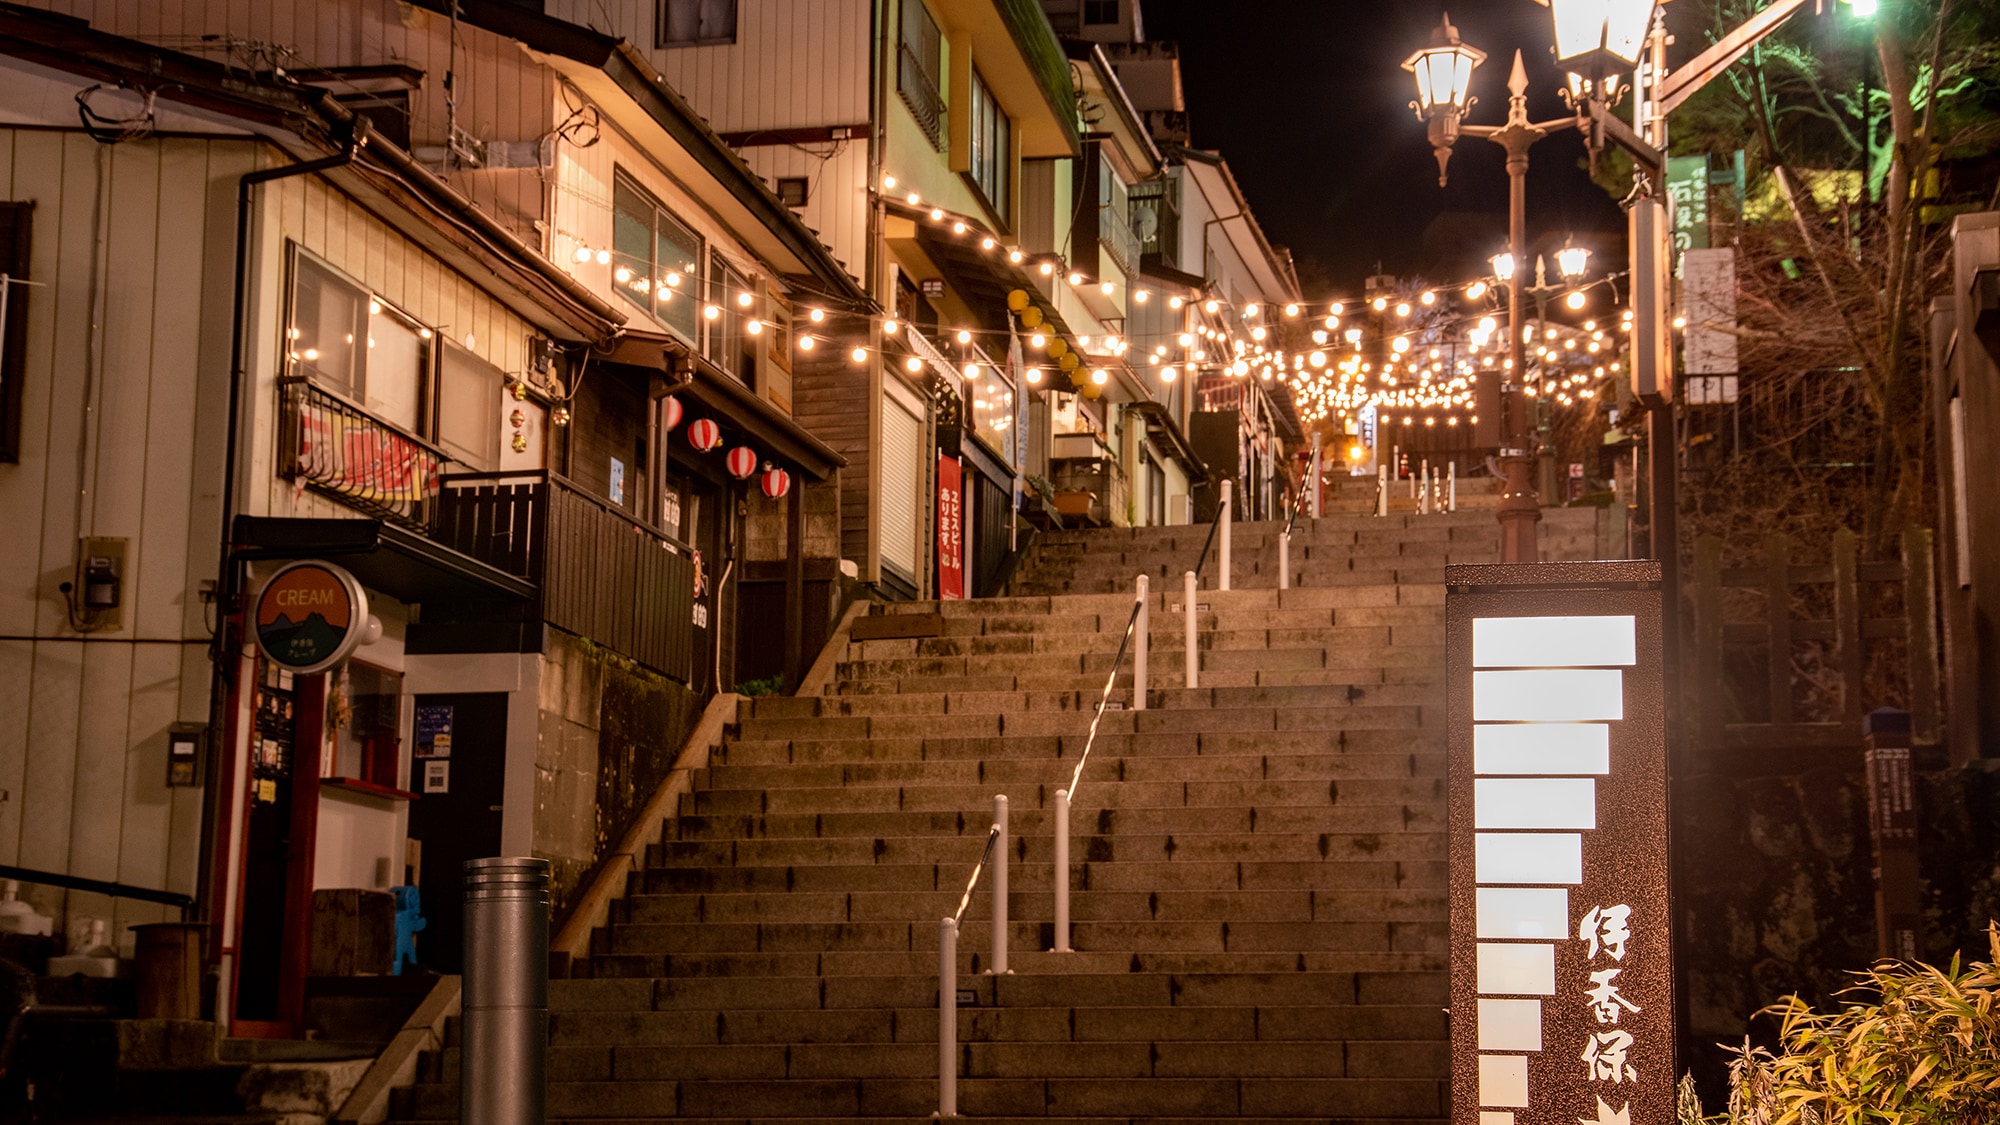 * [Berjalan-jalan] Juga disarankan untuk berjalan-jalan di tangga batu di malam hari dengan yukata berwarna.